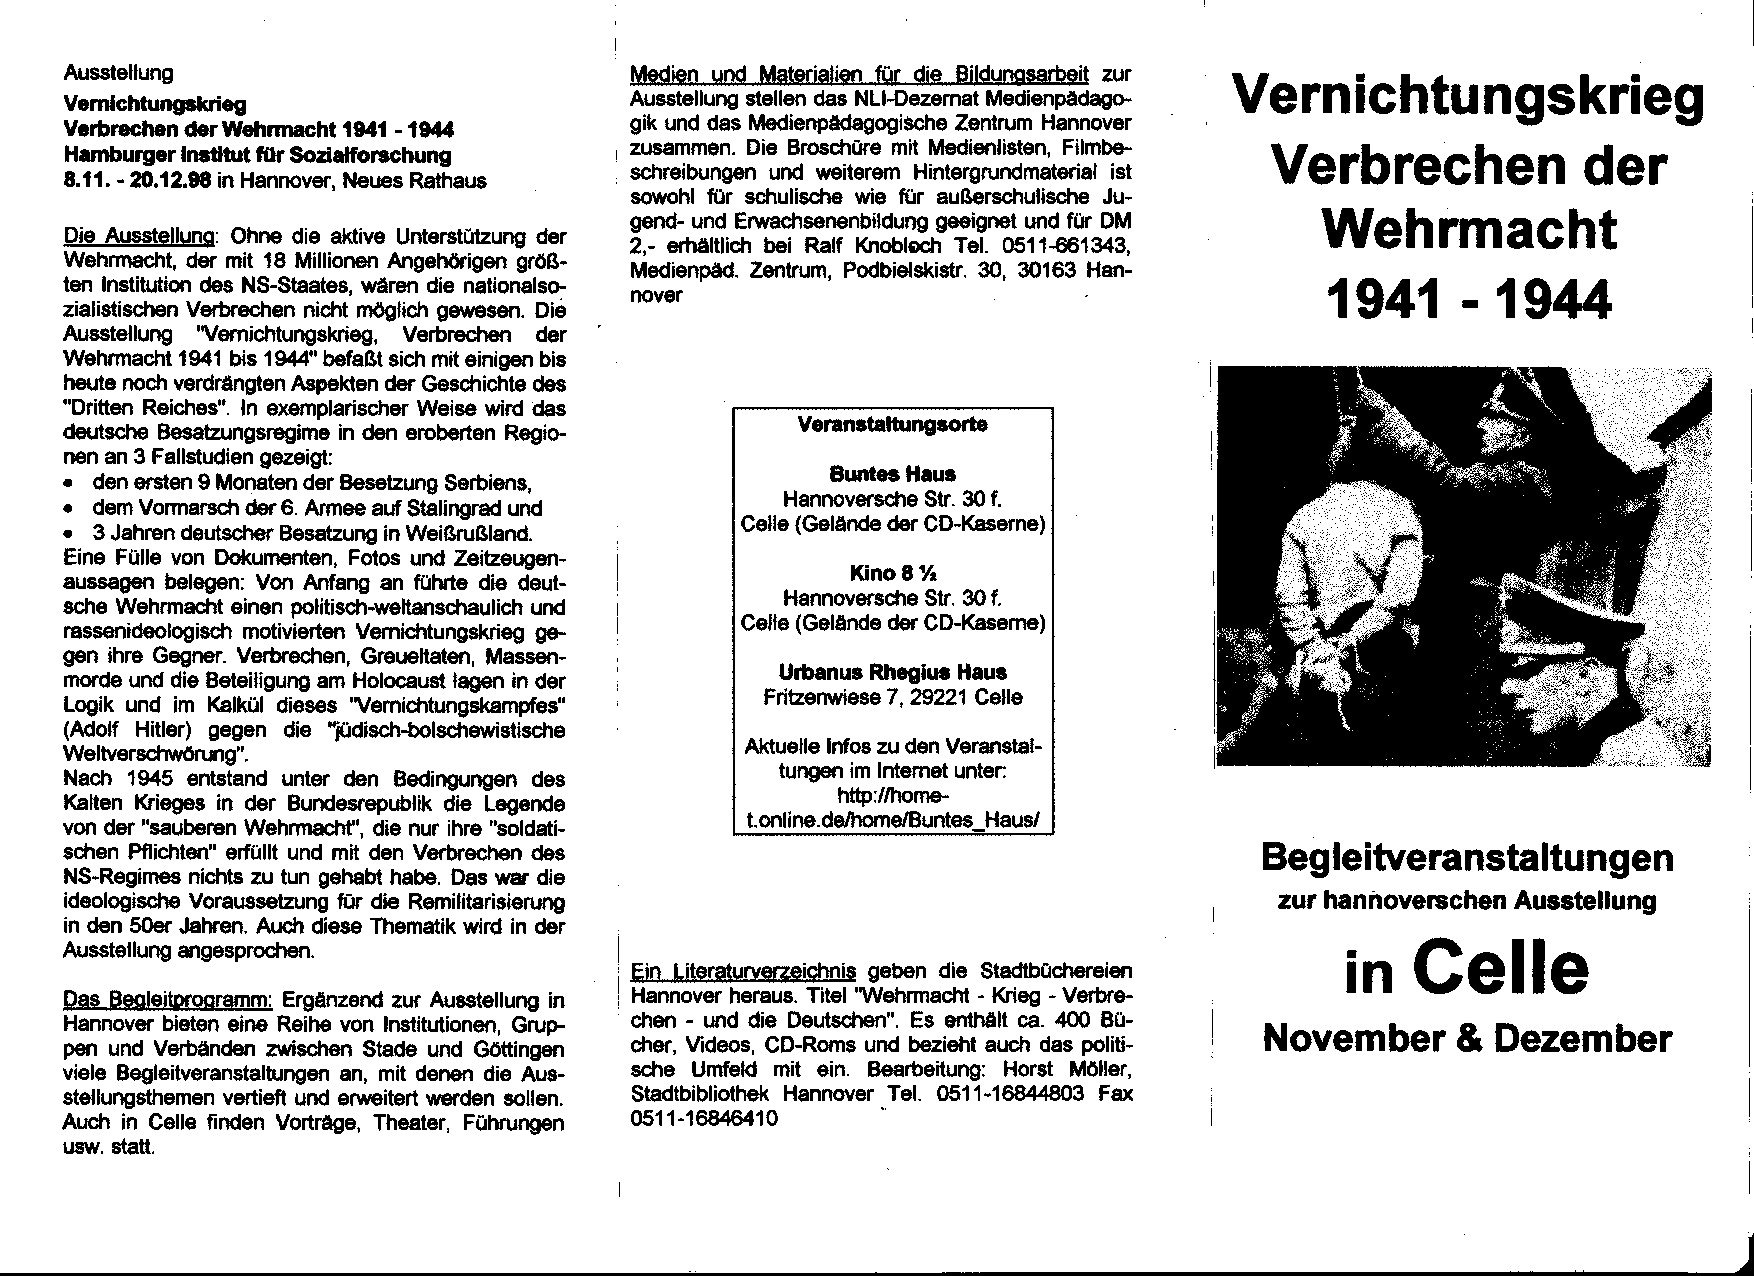 1998.10.28.Begleitveranstaltungen.Wehrmachtsausstellung.02.jpg